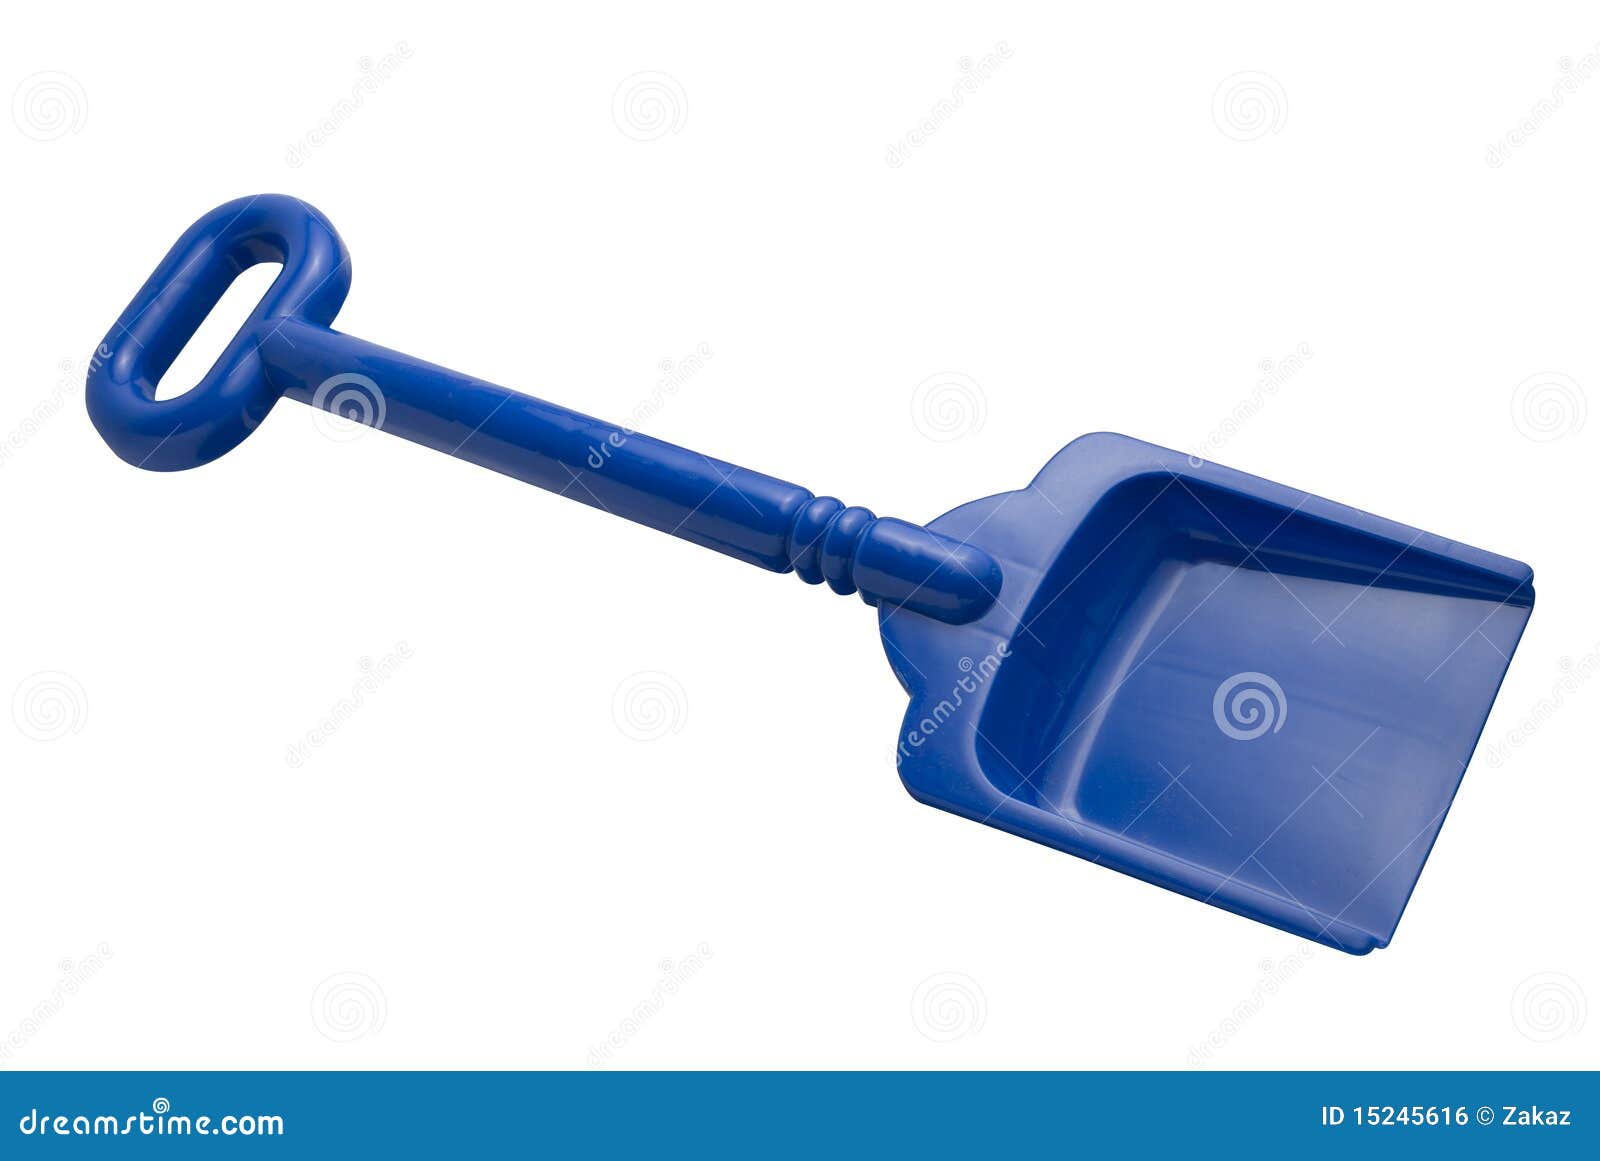 toy shovel | 